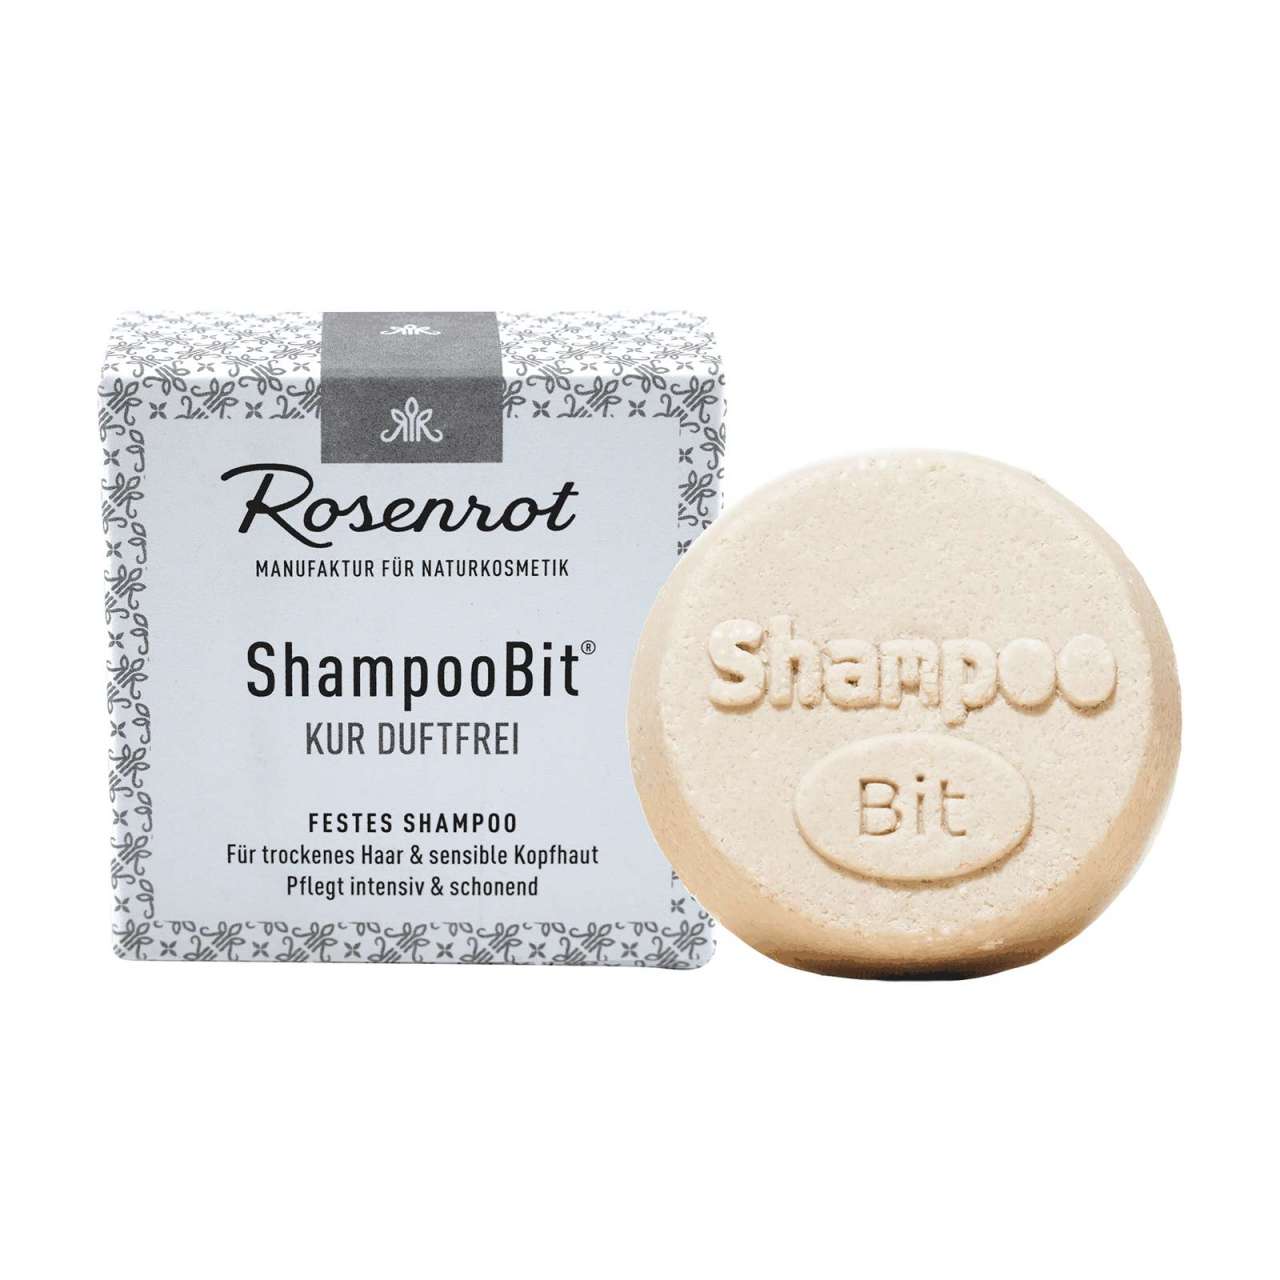 Rosenholz Festes Shampoo - ShampooBit duftfrei kaufen